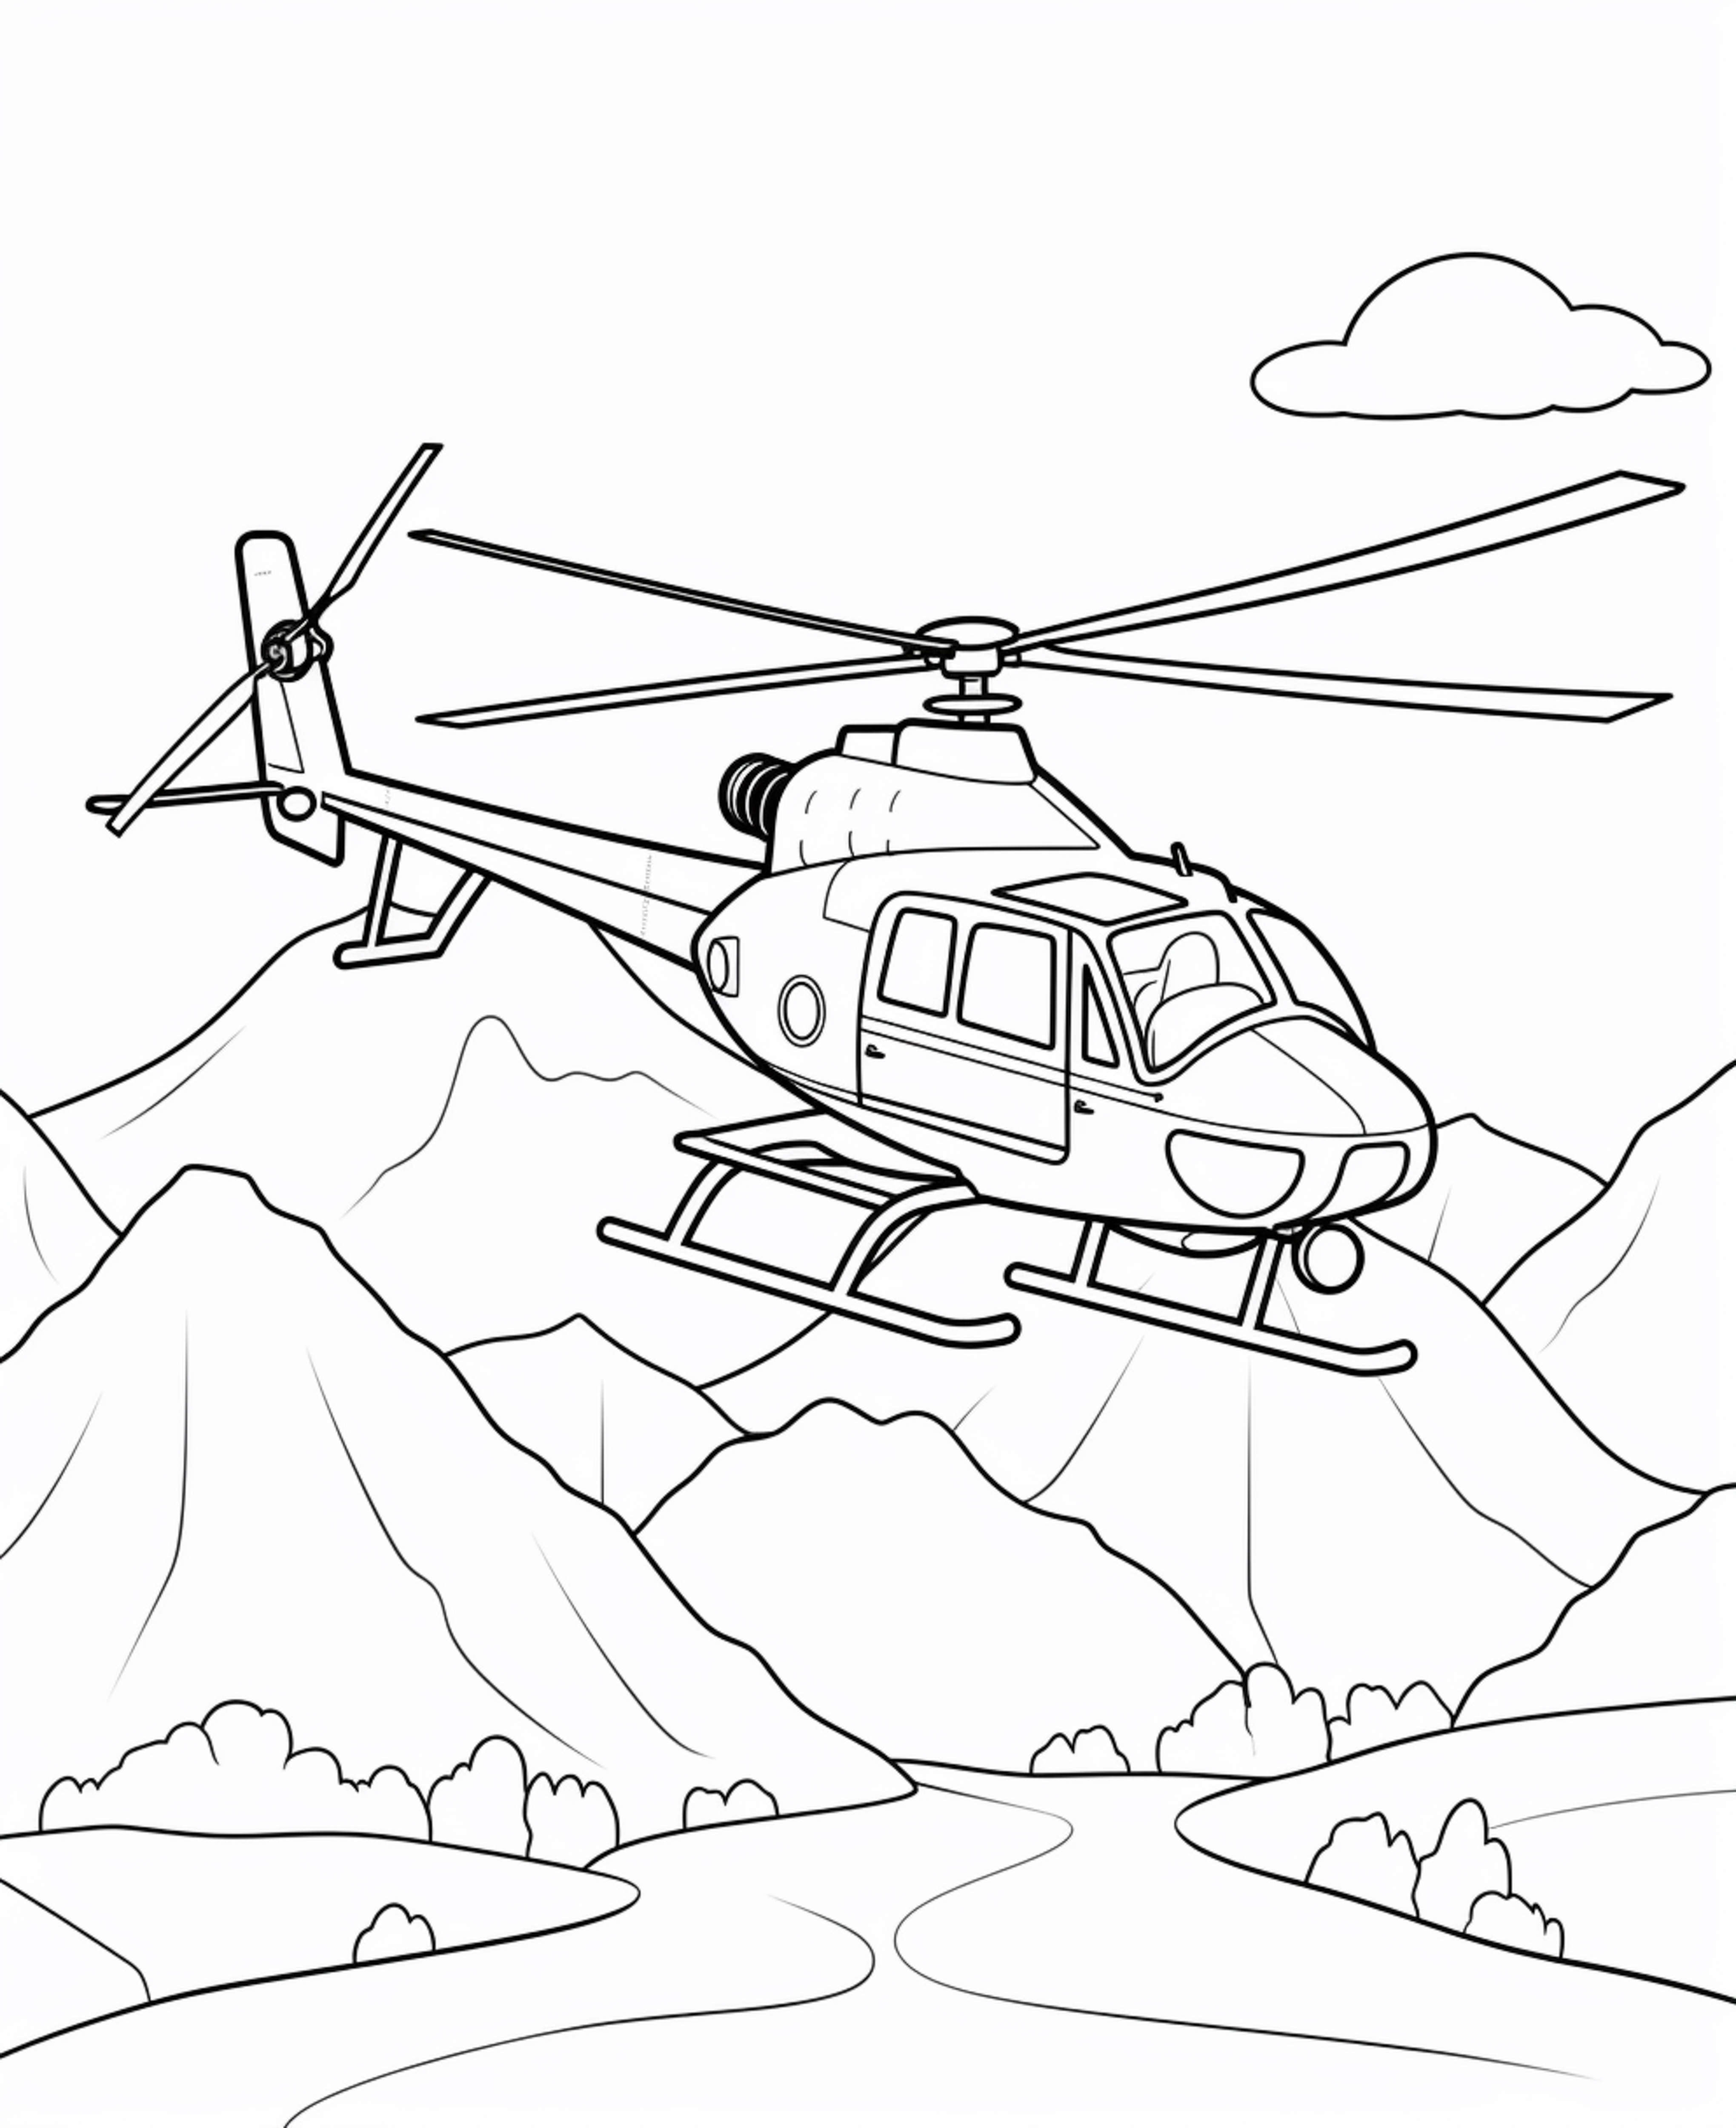 Раскраска вертолет «Соколиная гора» формата А4 в высоком качестве